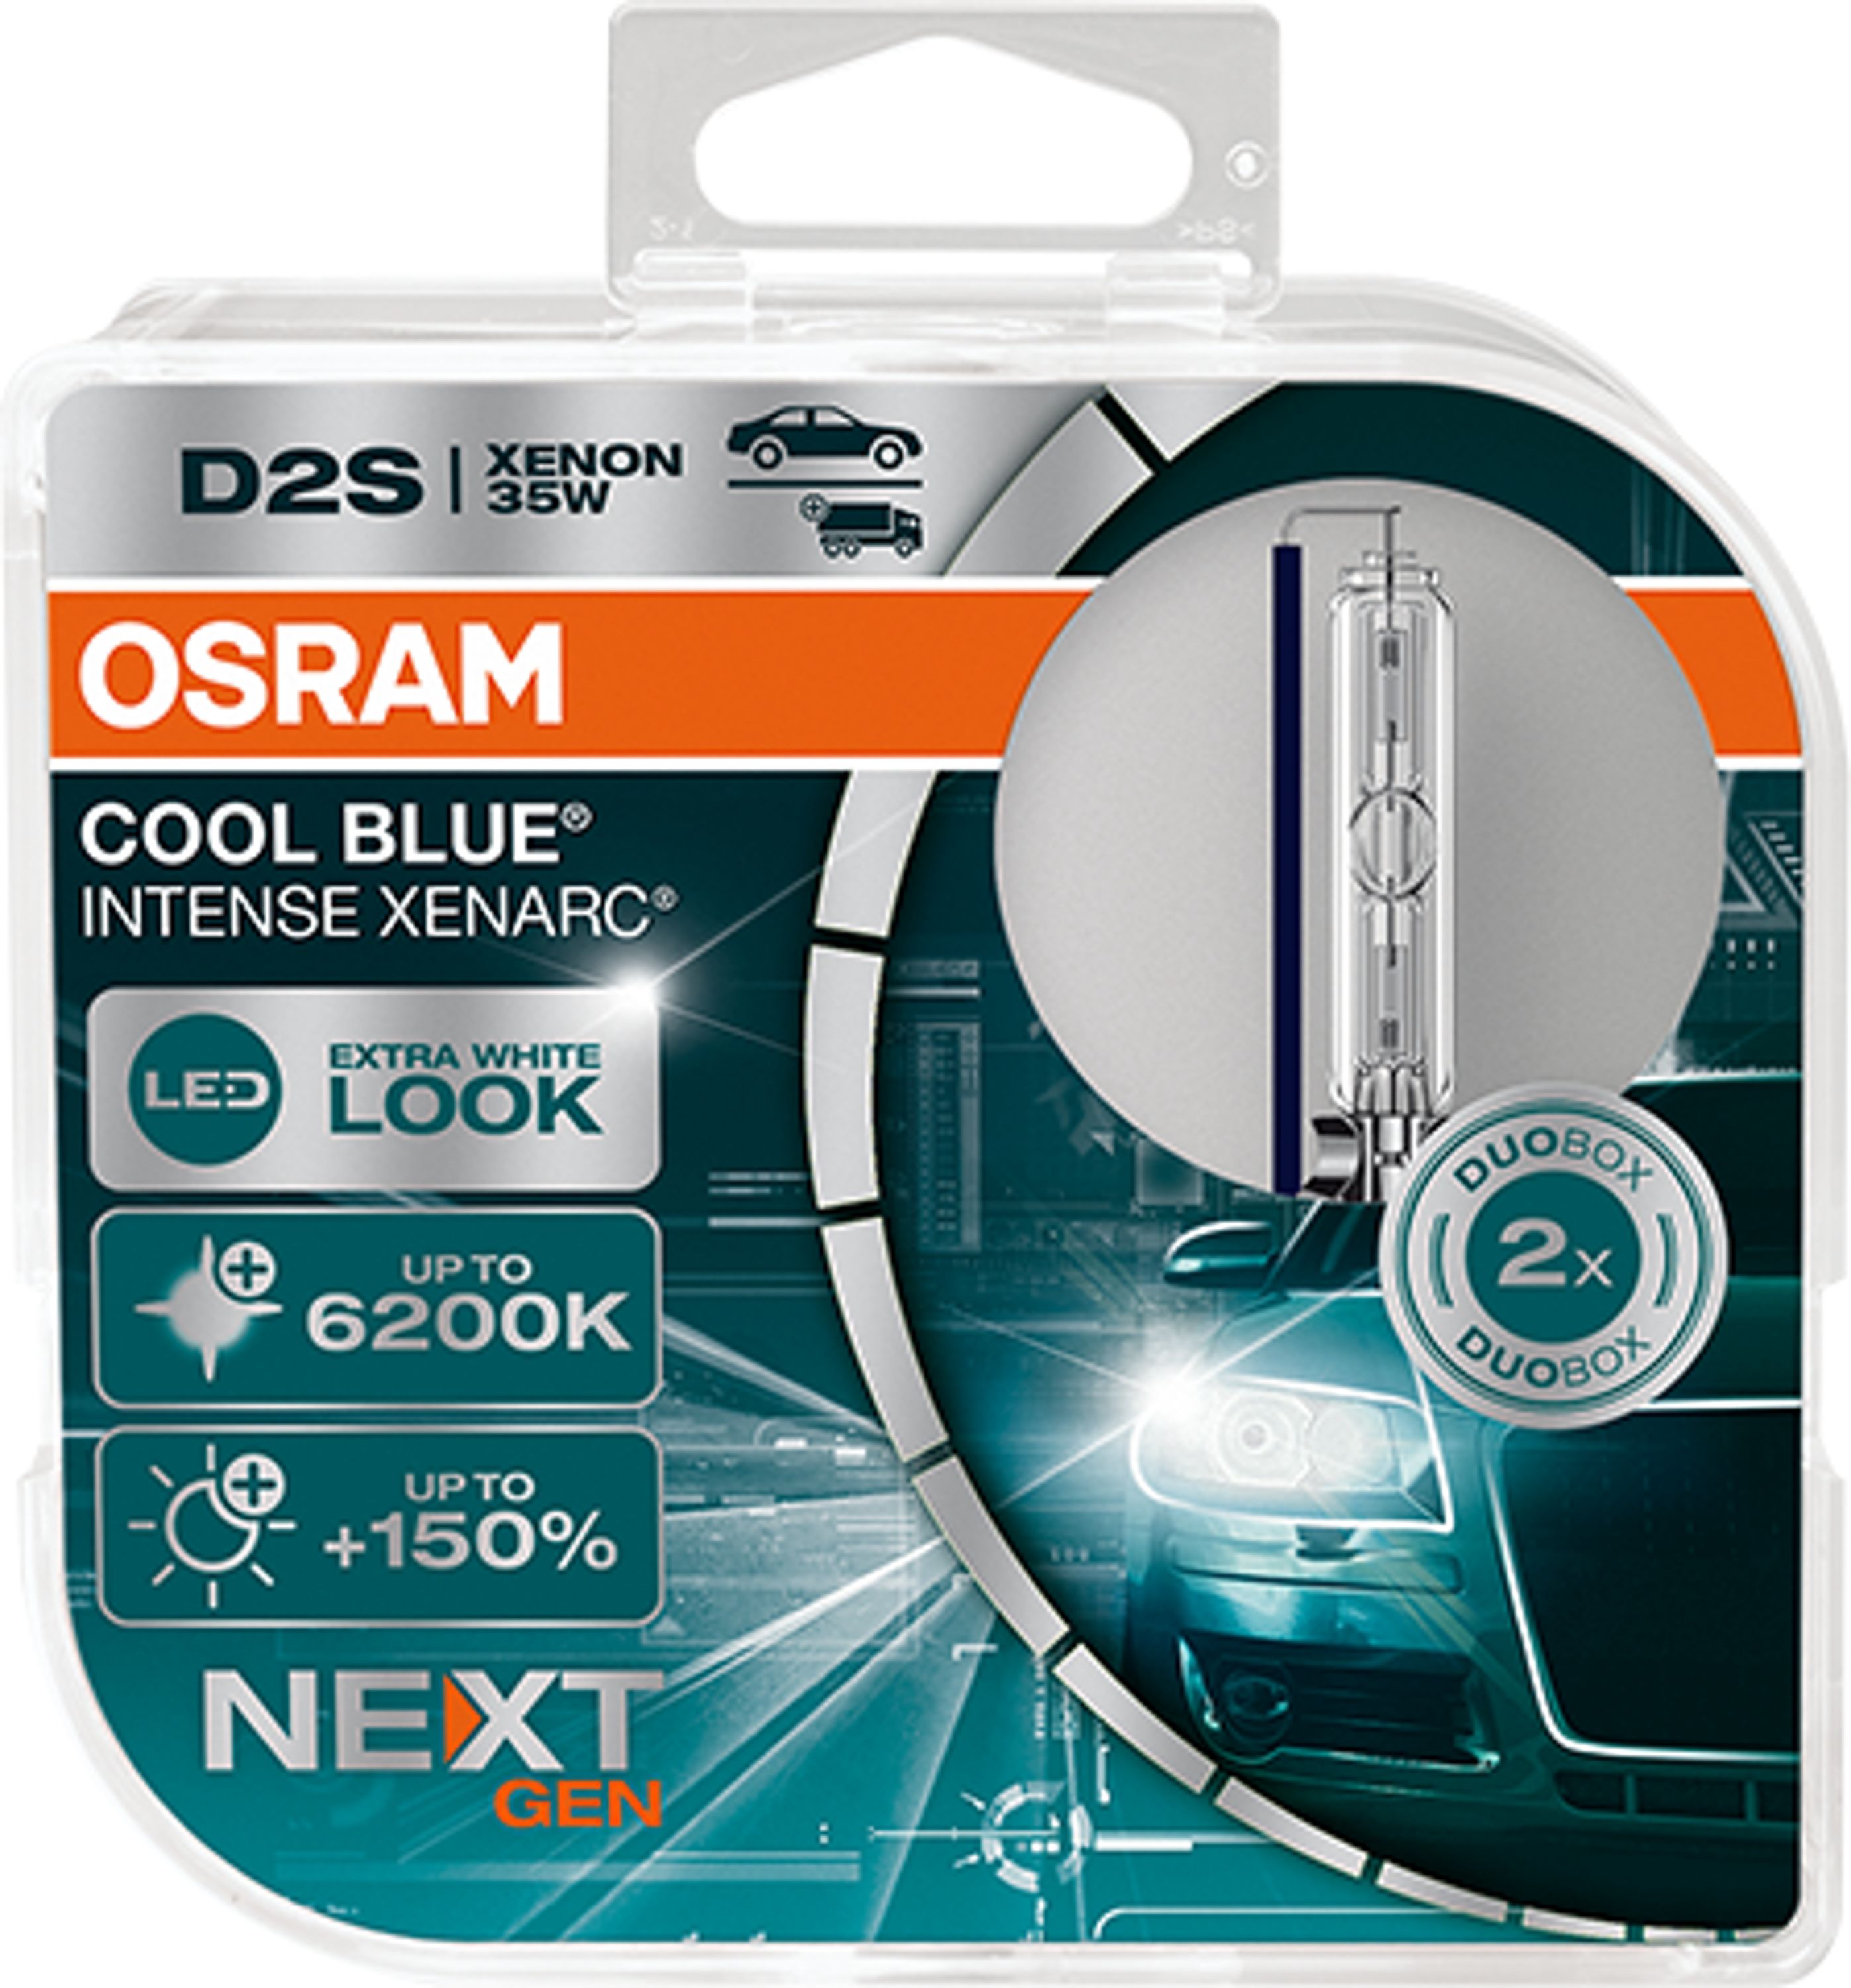 OSRAM D2S XENARC COOL BLUE INTENSE Xenon Brenner NEXT GEN 6200K DUO BOX